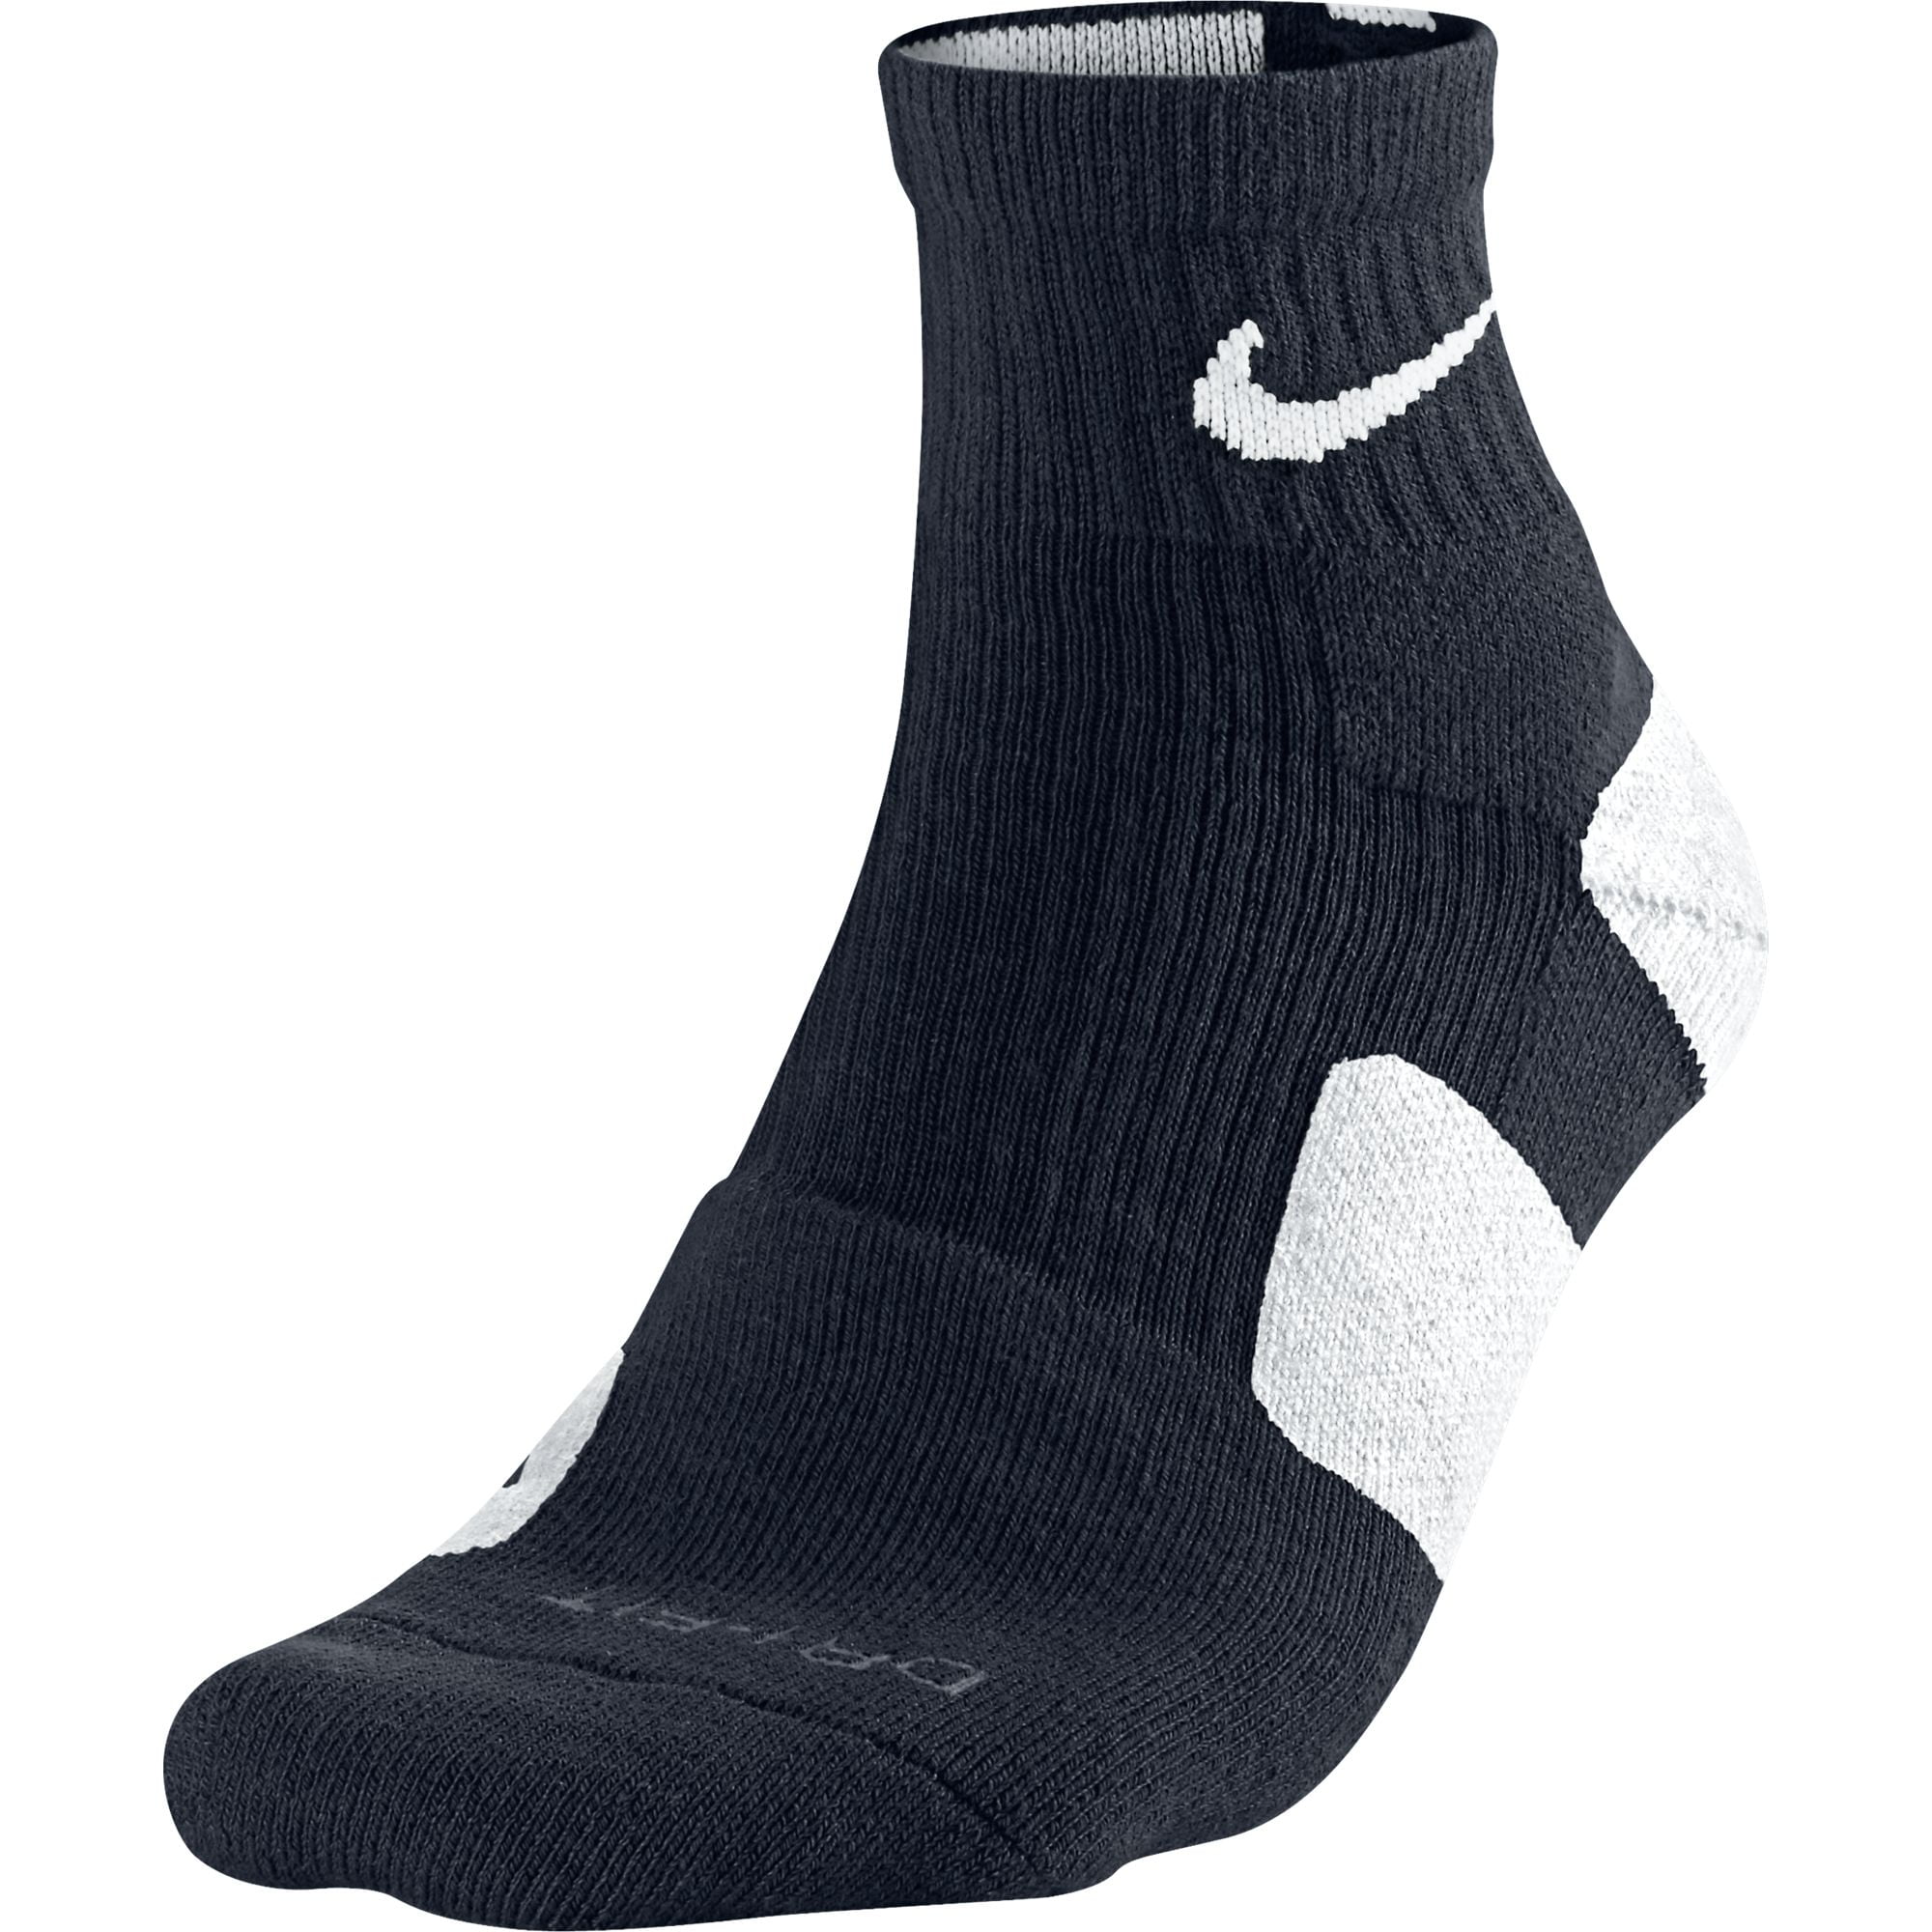 nike quarter basketball socks